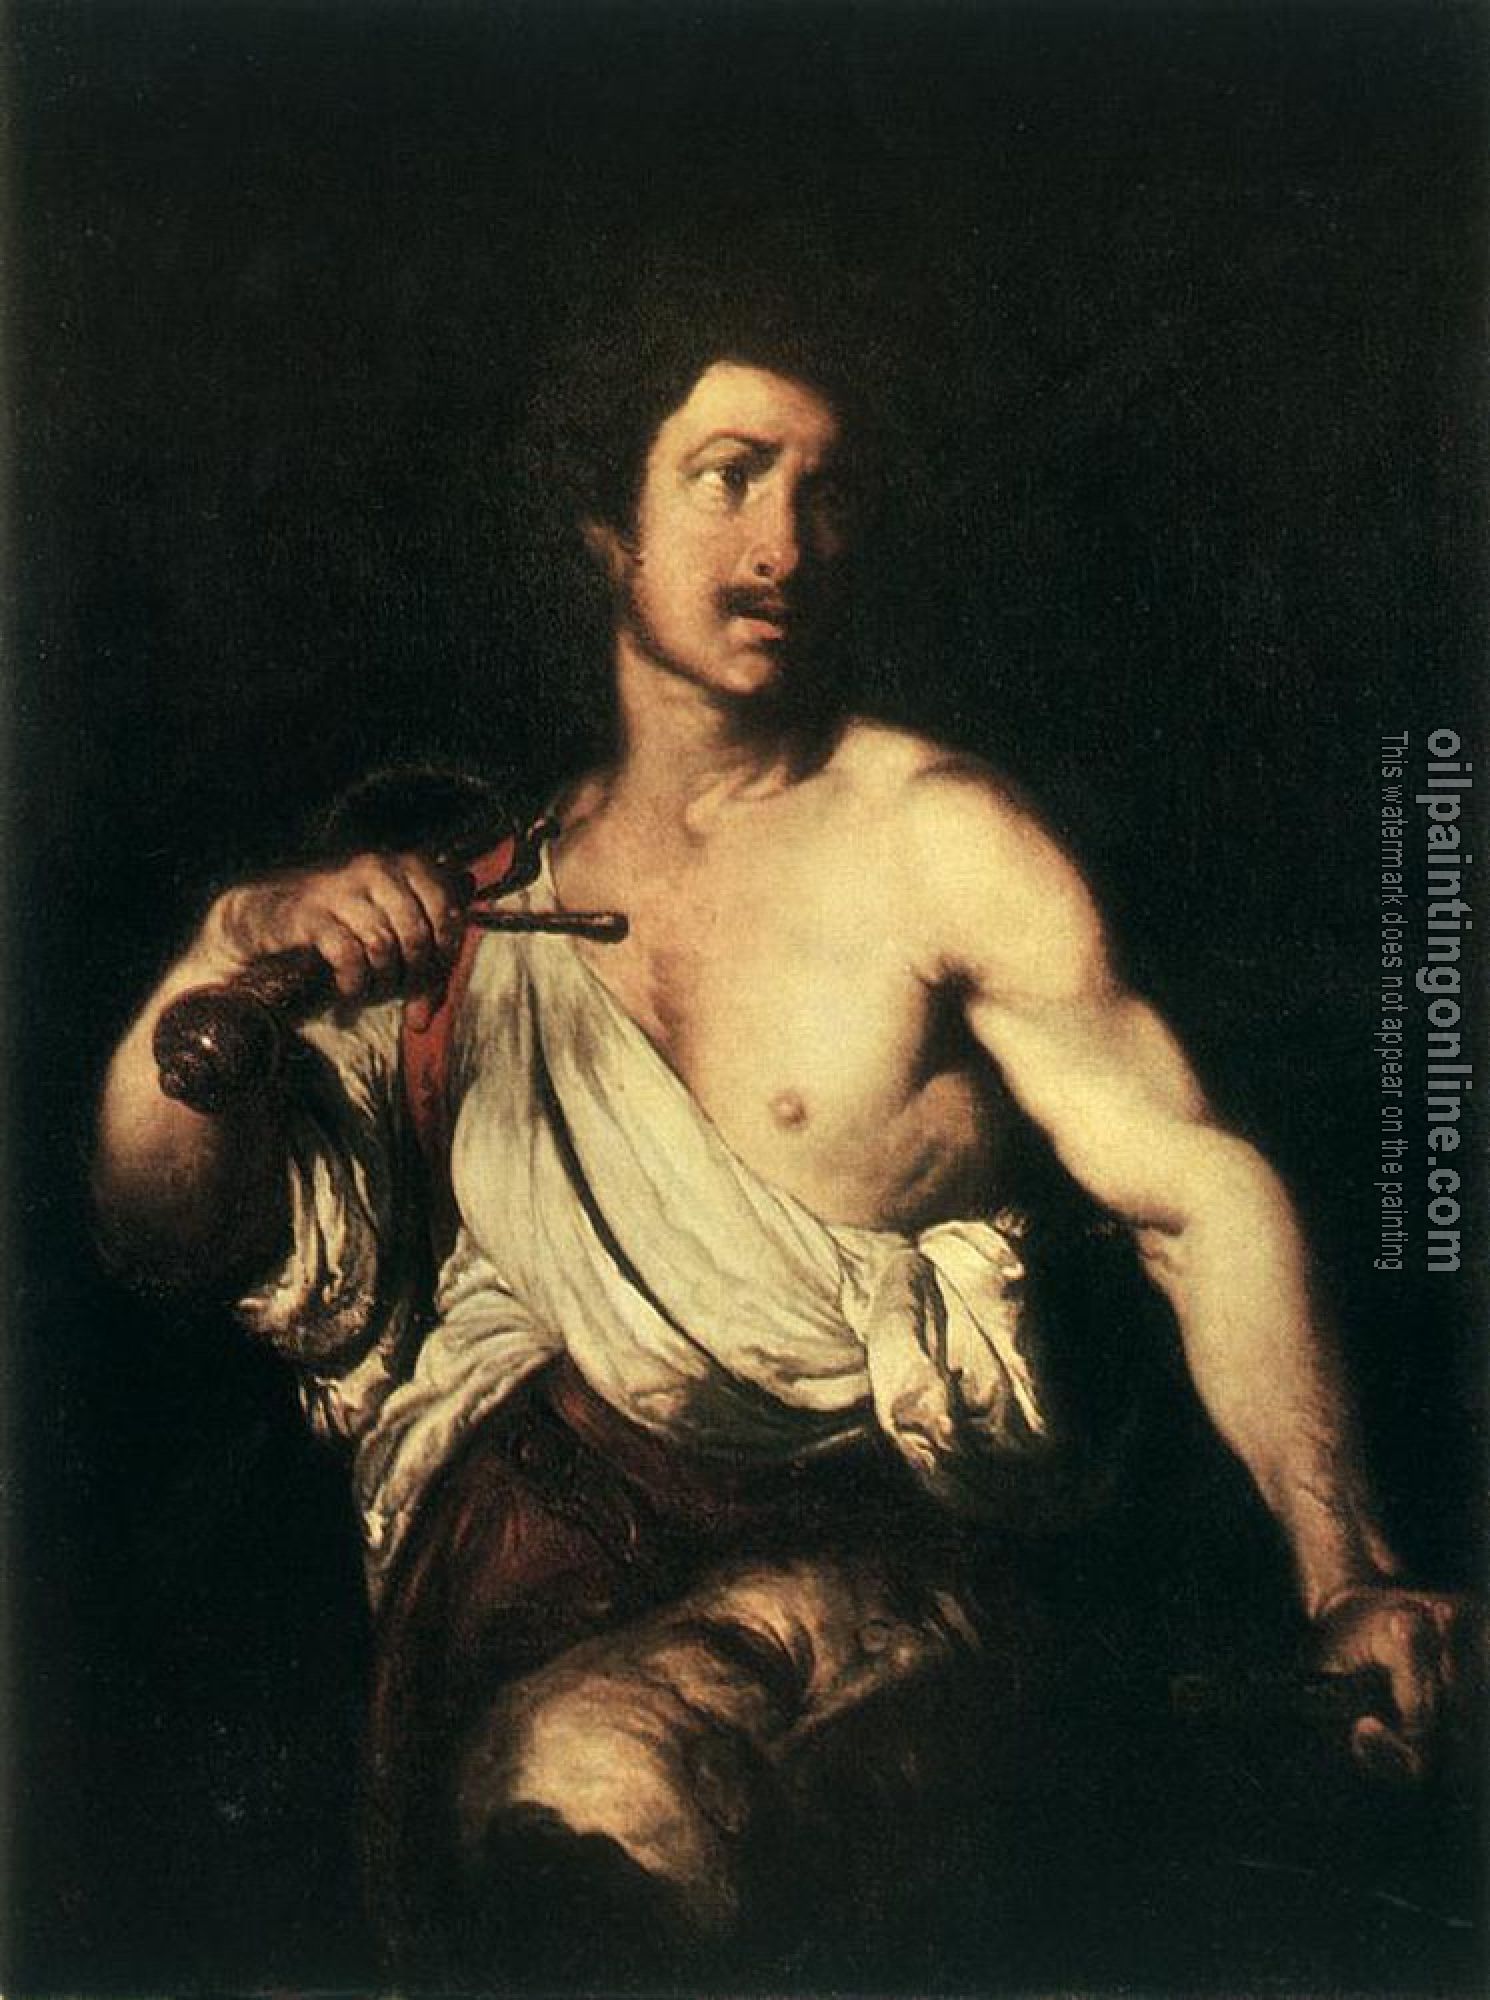 Strozzi, Bernardo - David with the Head of Goliath